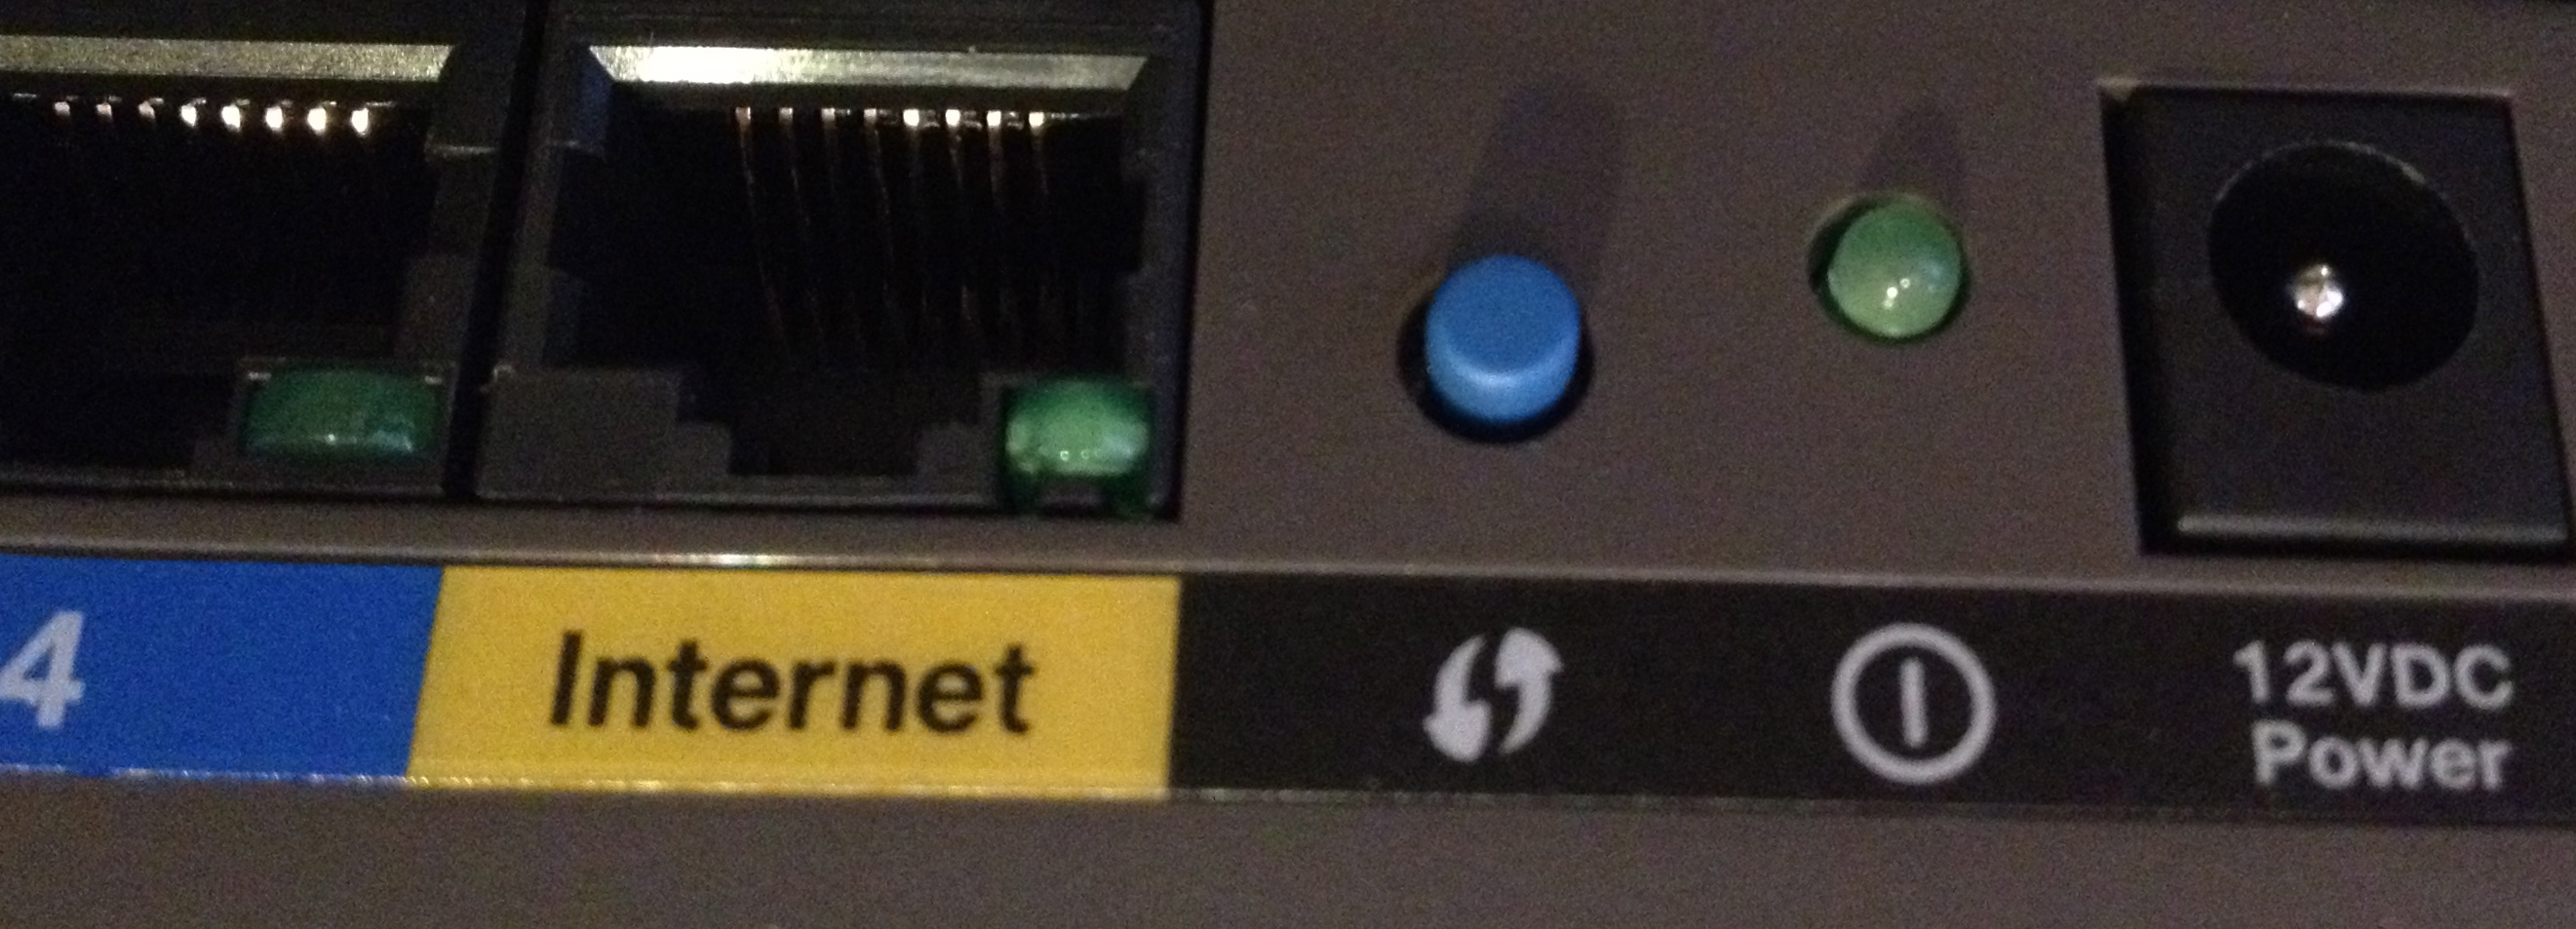 netgear router wps button